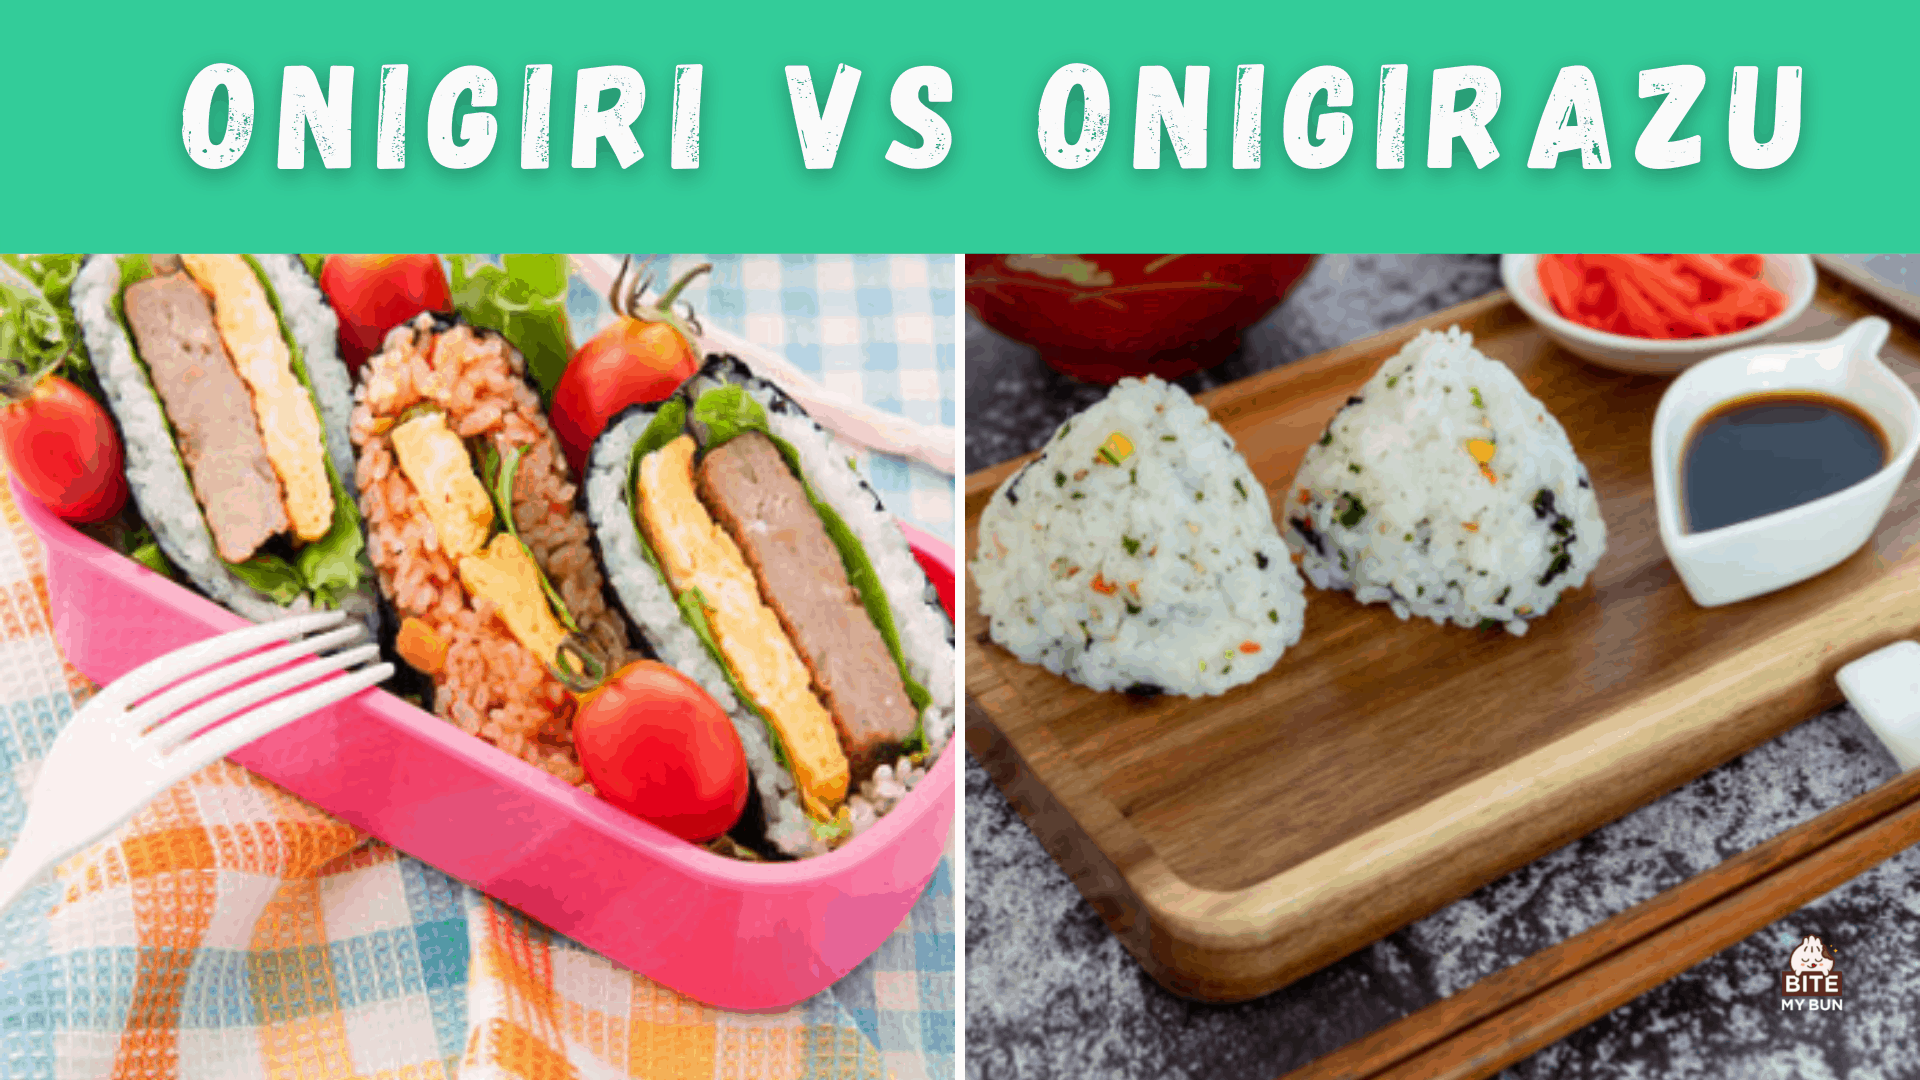 Onigiri vs onigirazu | Yadda suka bambanta kuma me yasa kuke son gwada su duka biyun